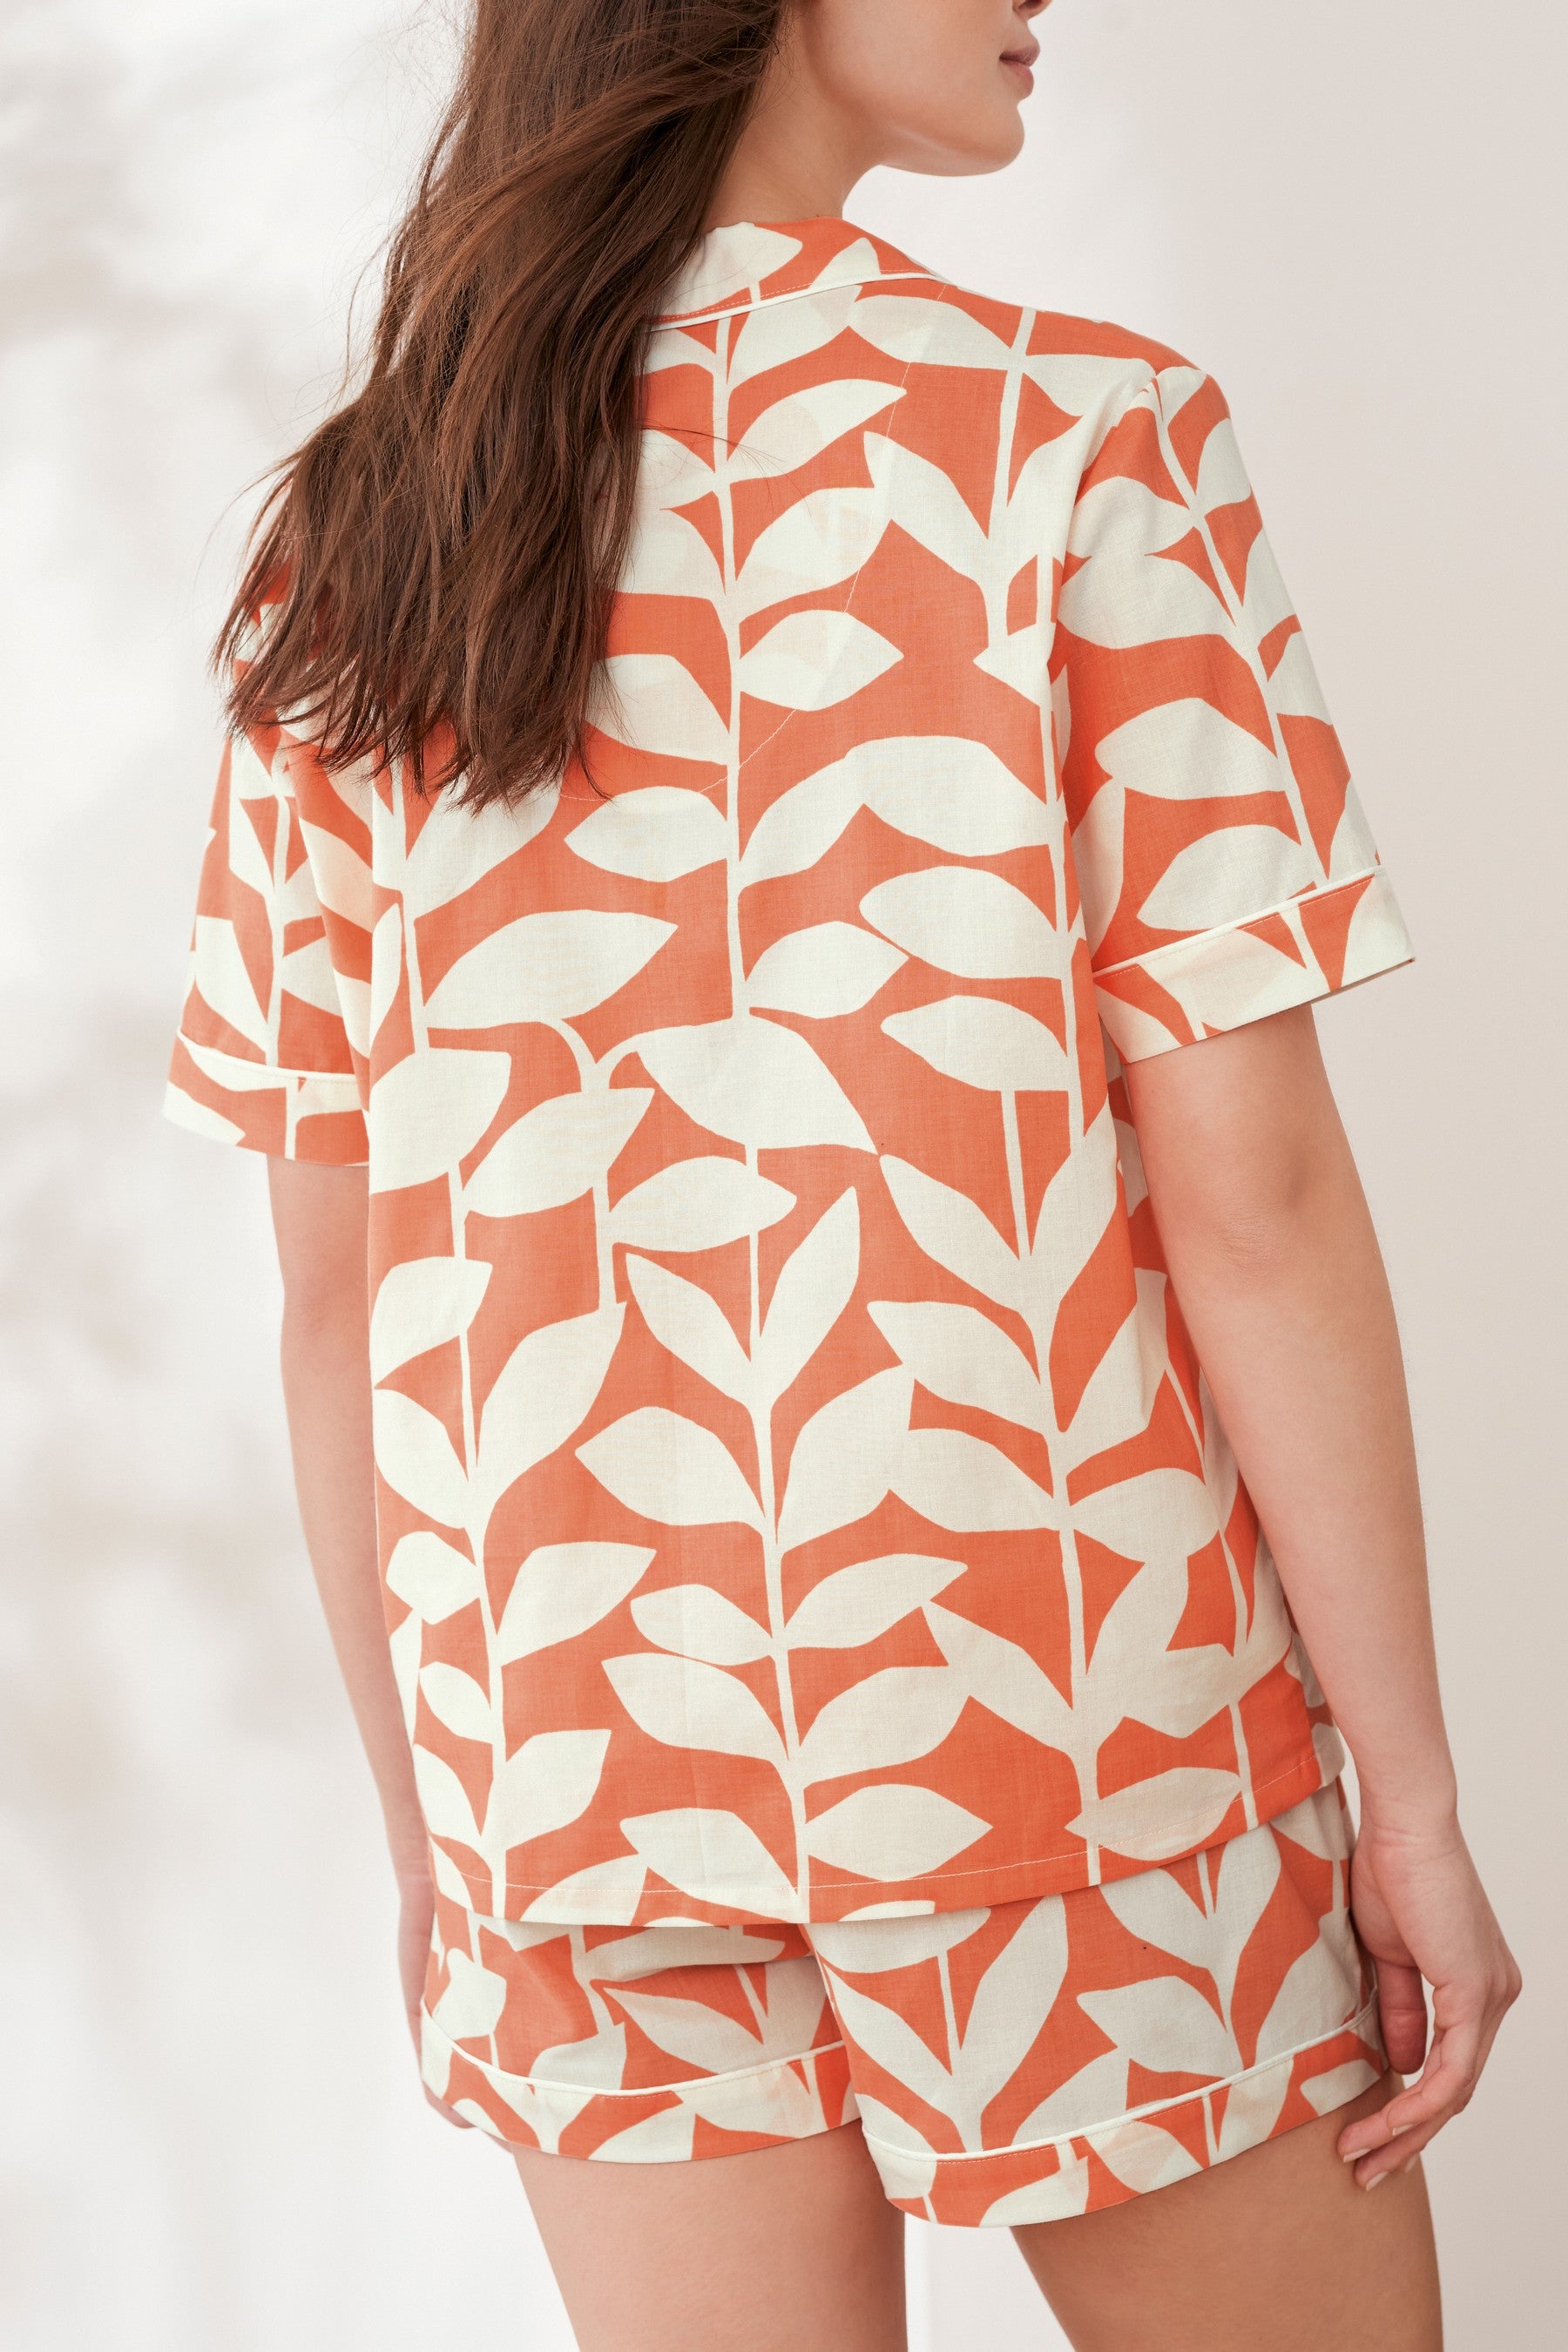 Styleinstant Orange Leaves Printed Lounge Wear.